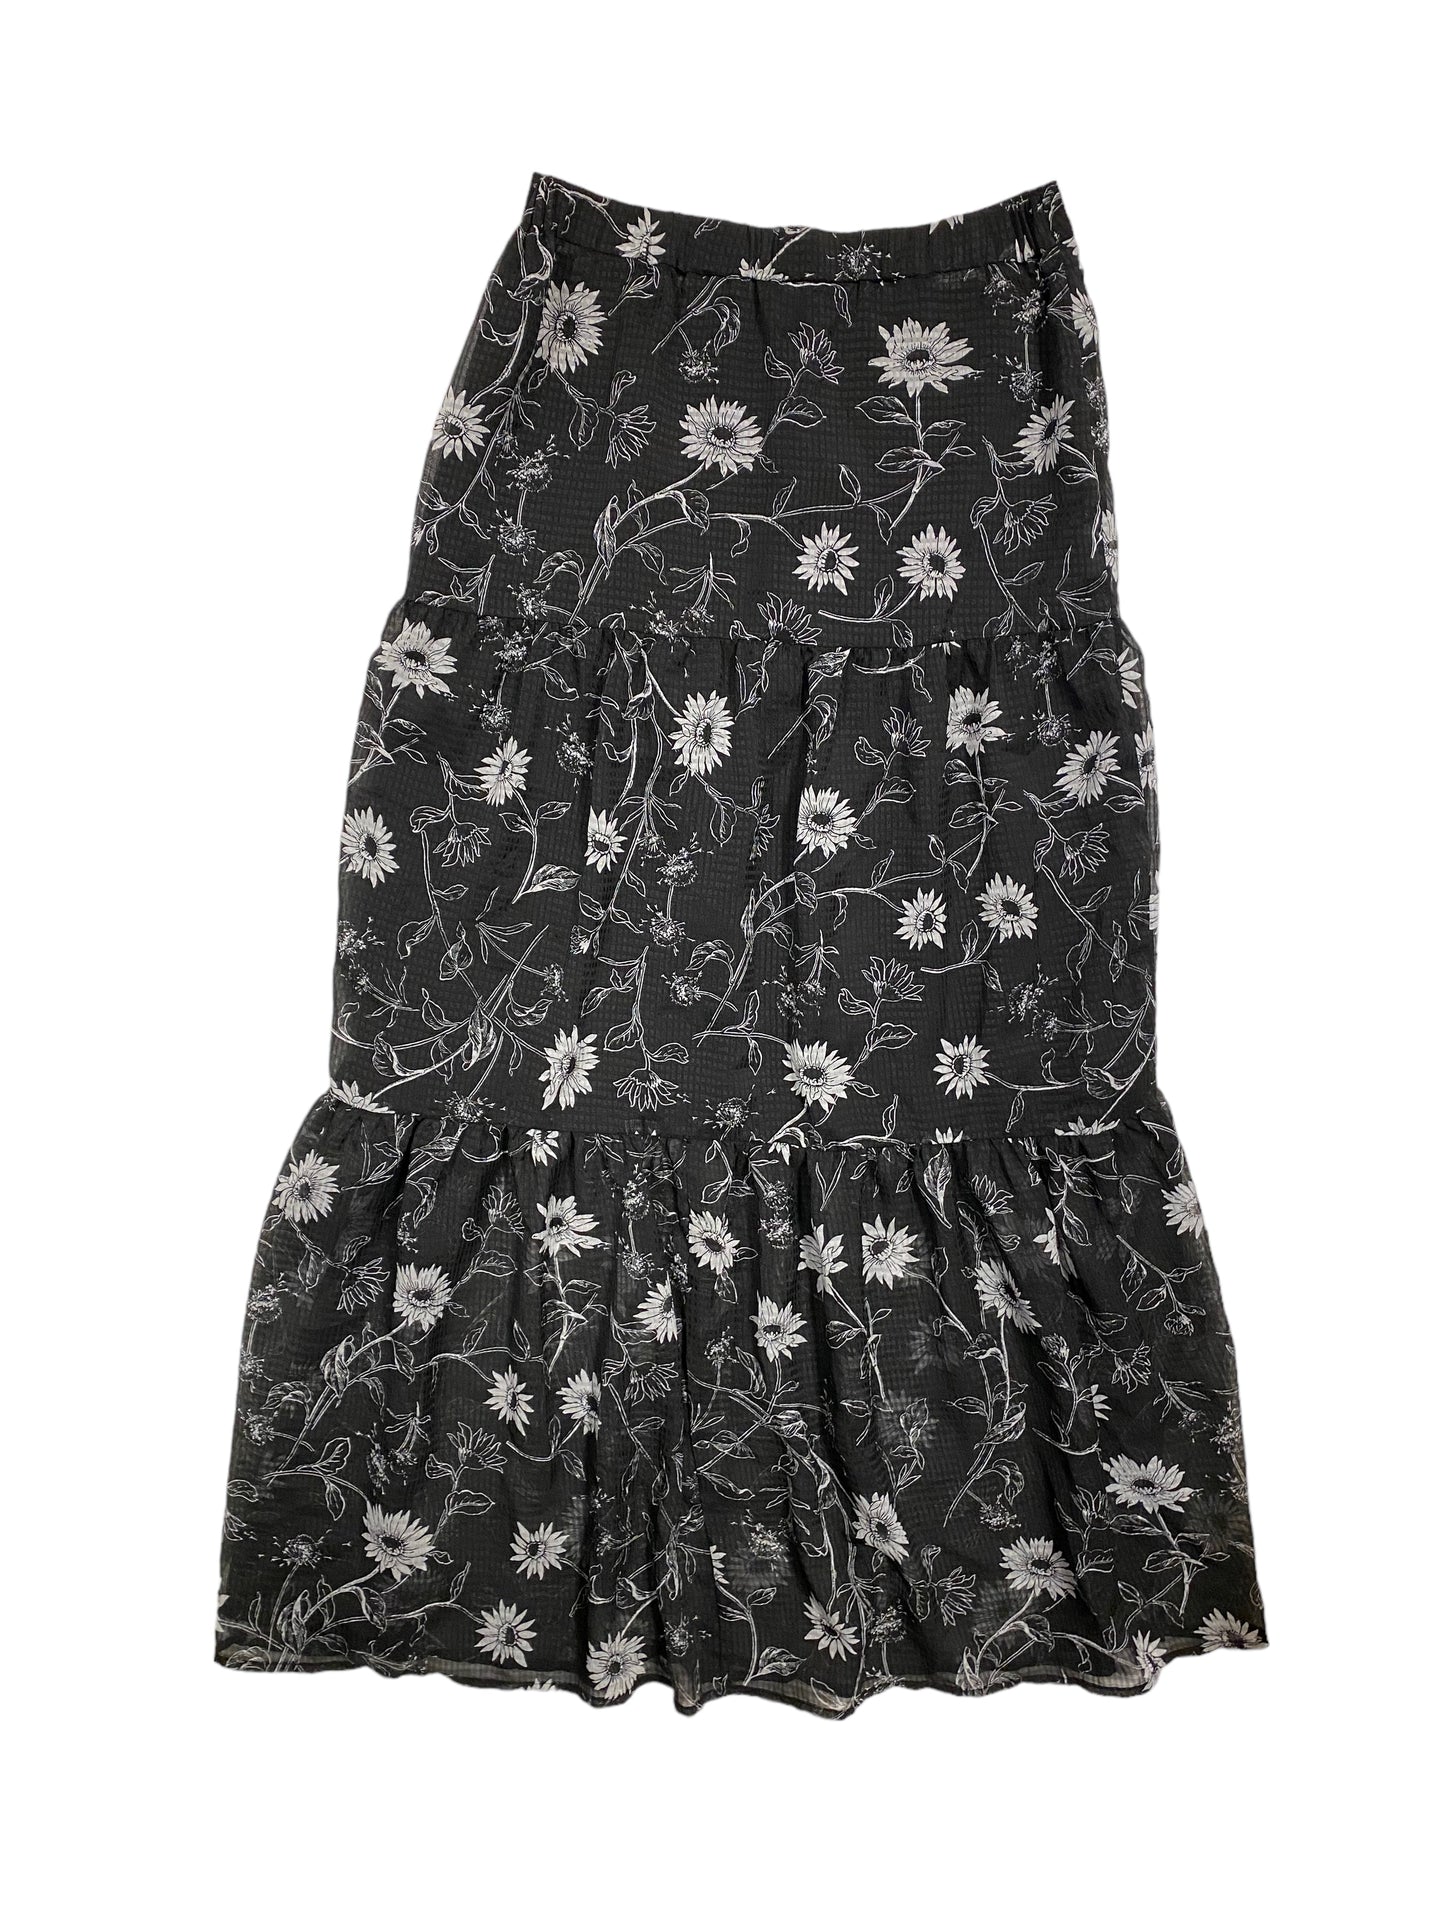 Black & White Skirt Maxi Leith, Size S